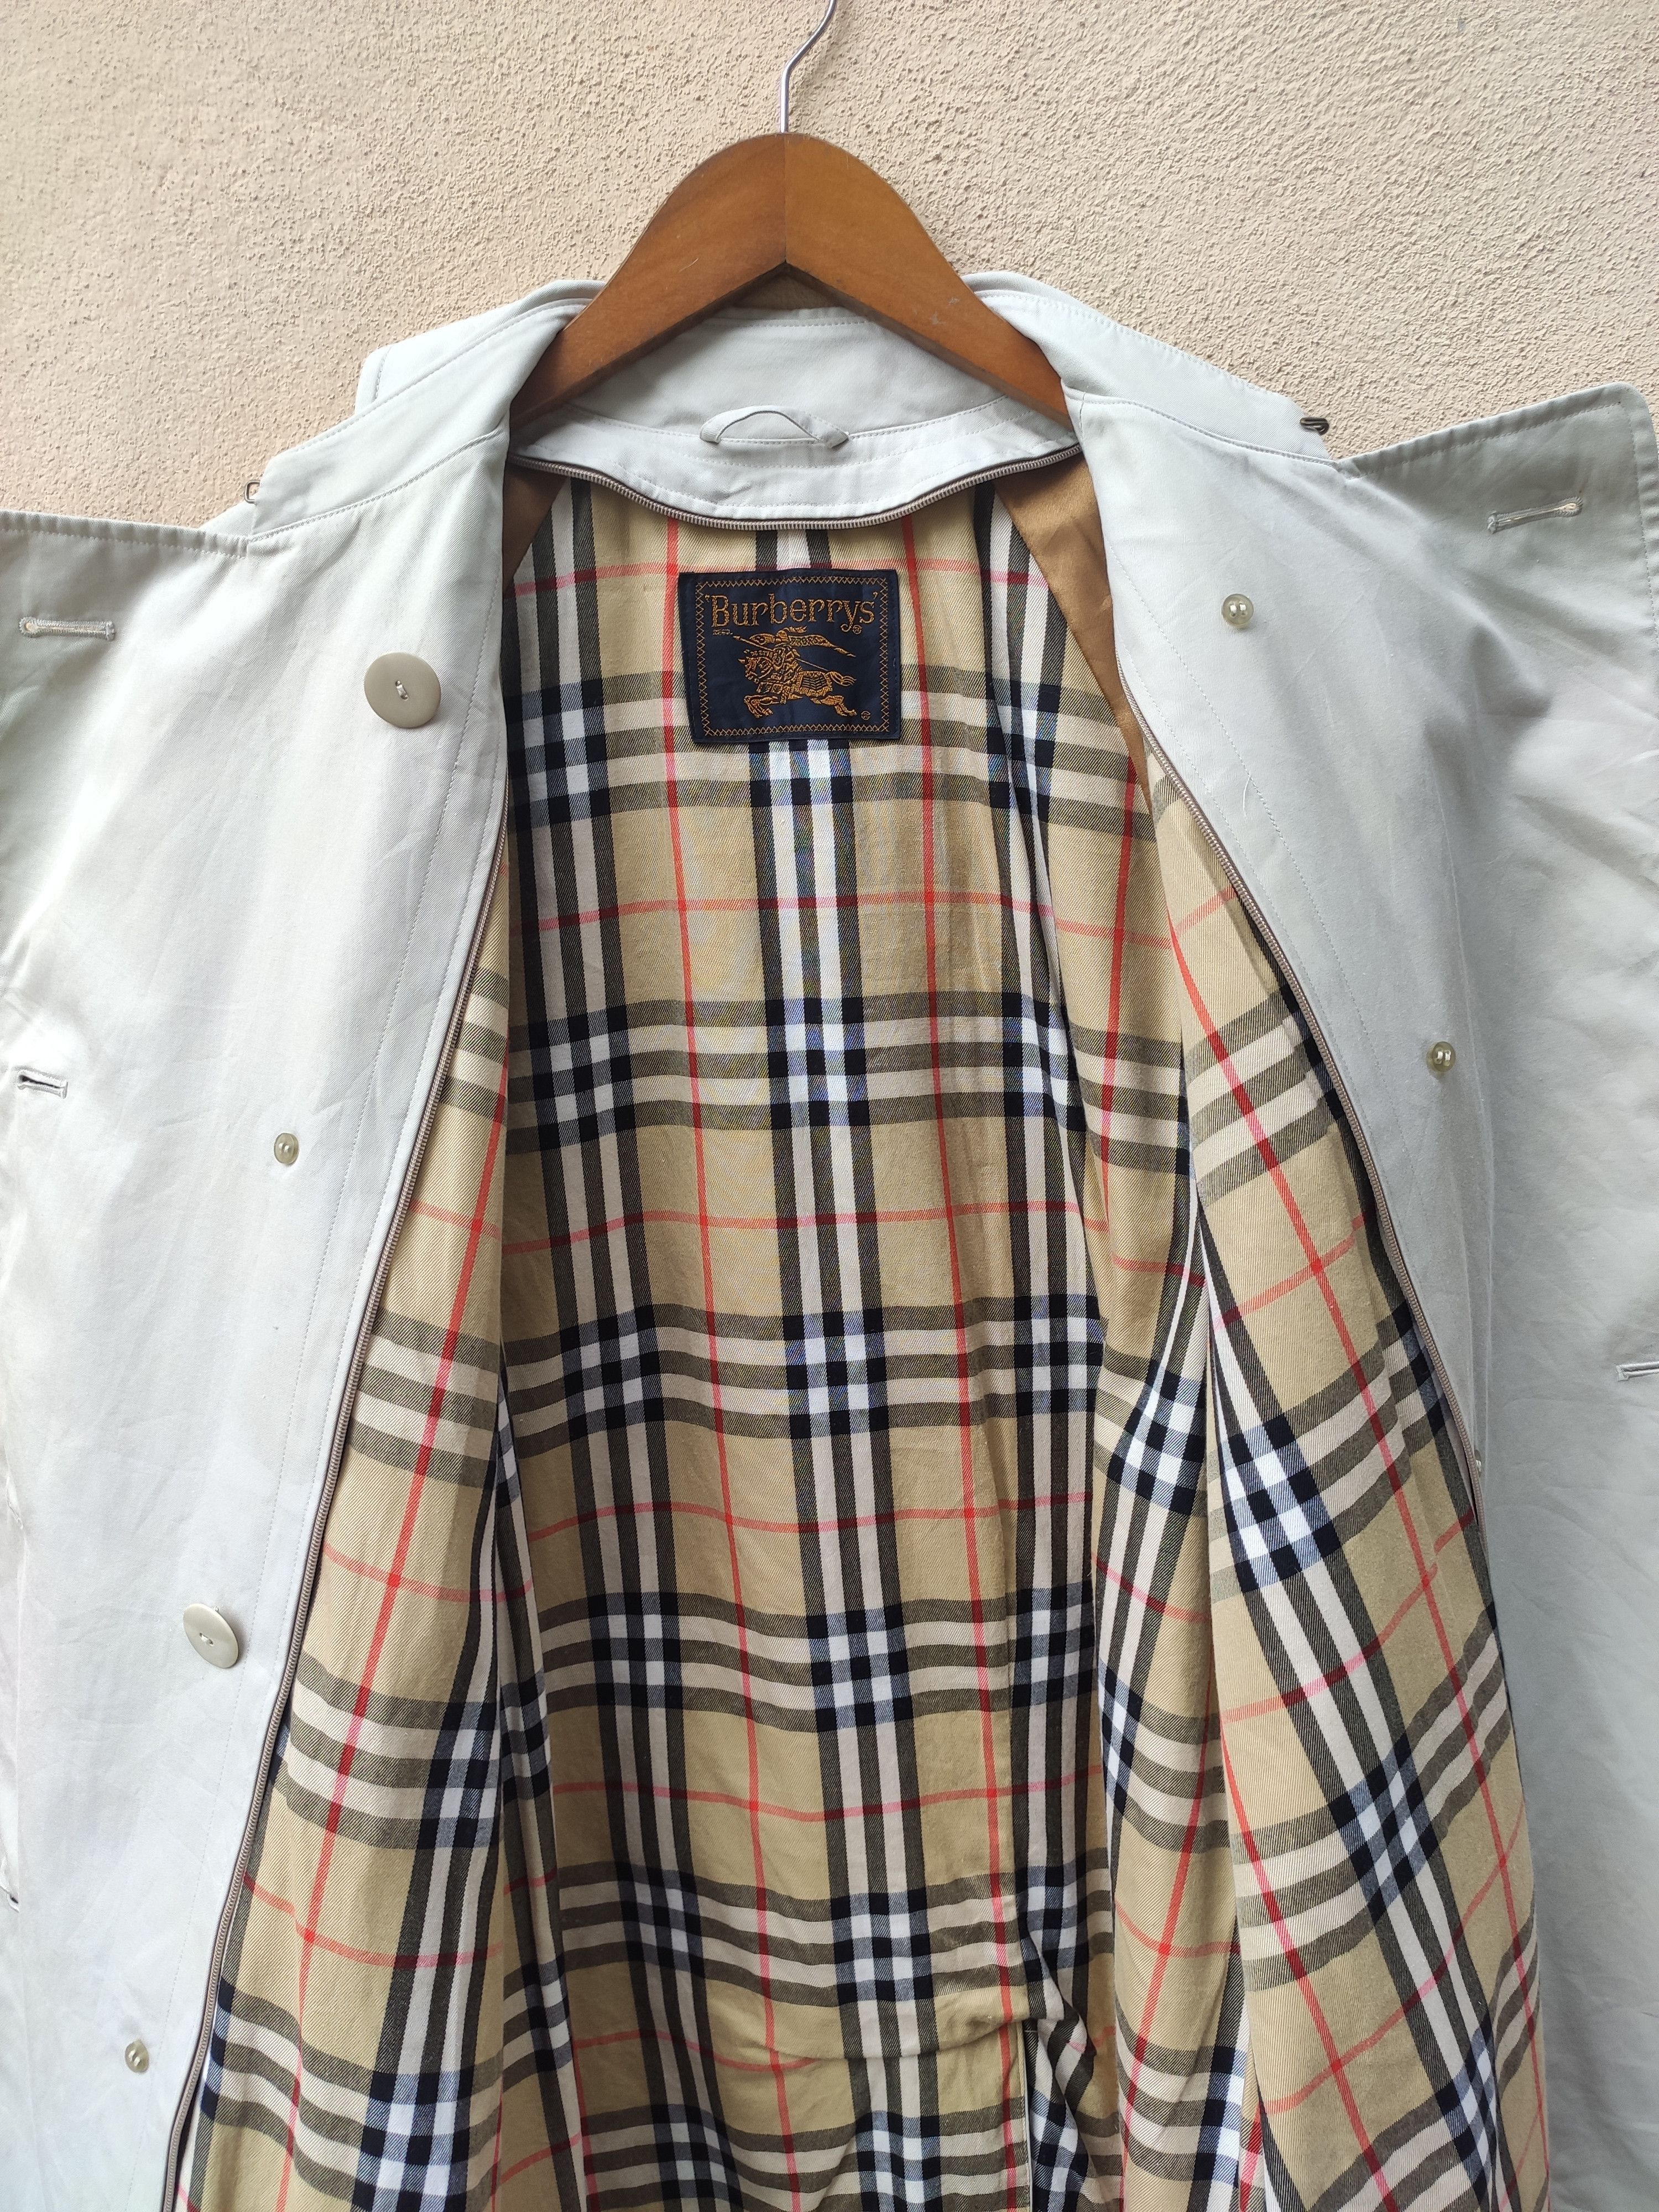 Burberry Prorsum Vintage Burberrys parkas nova check trench coat | Grailed